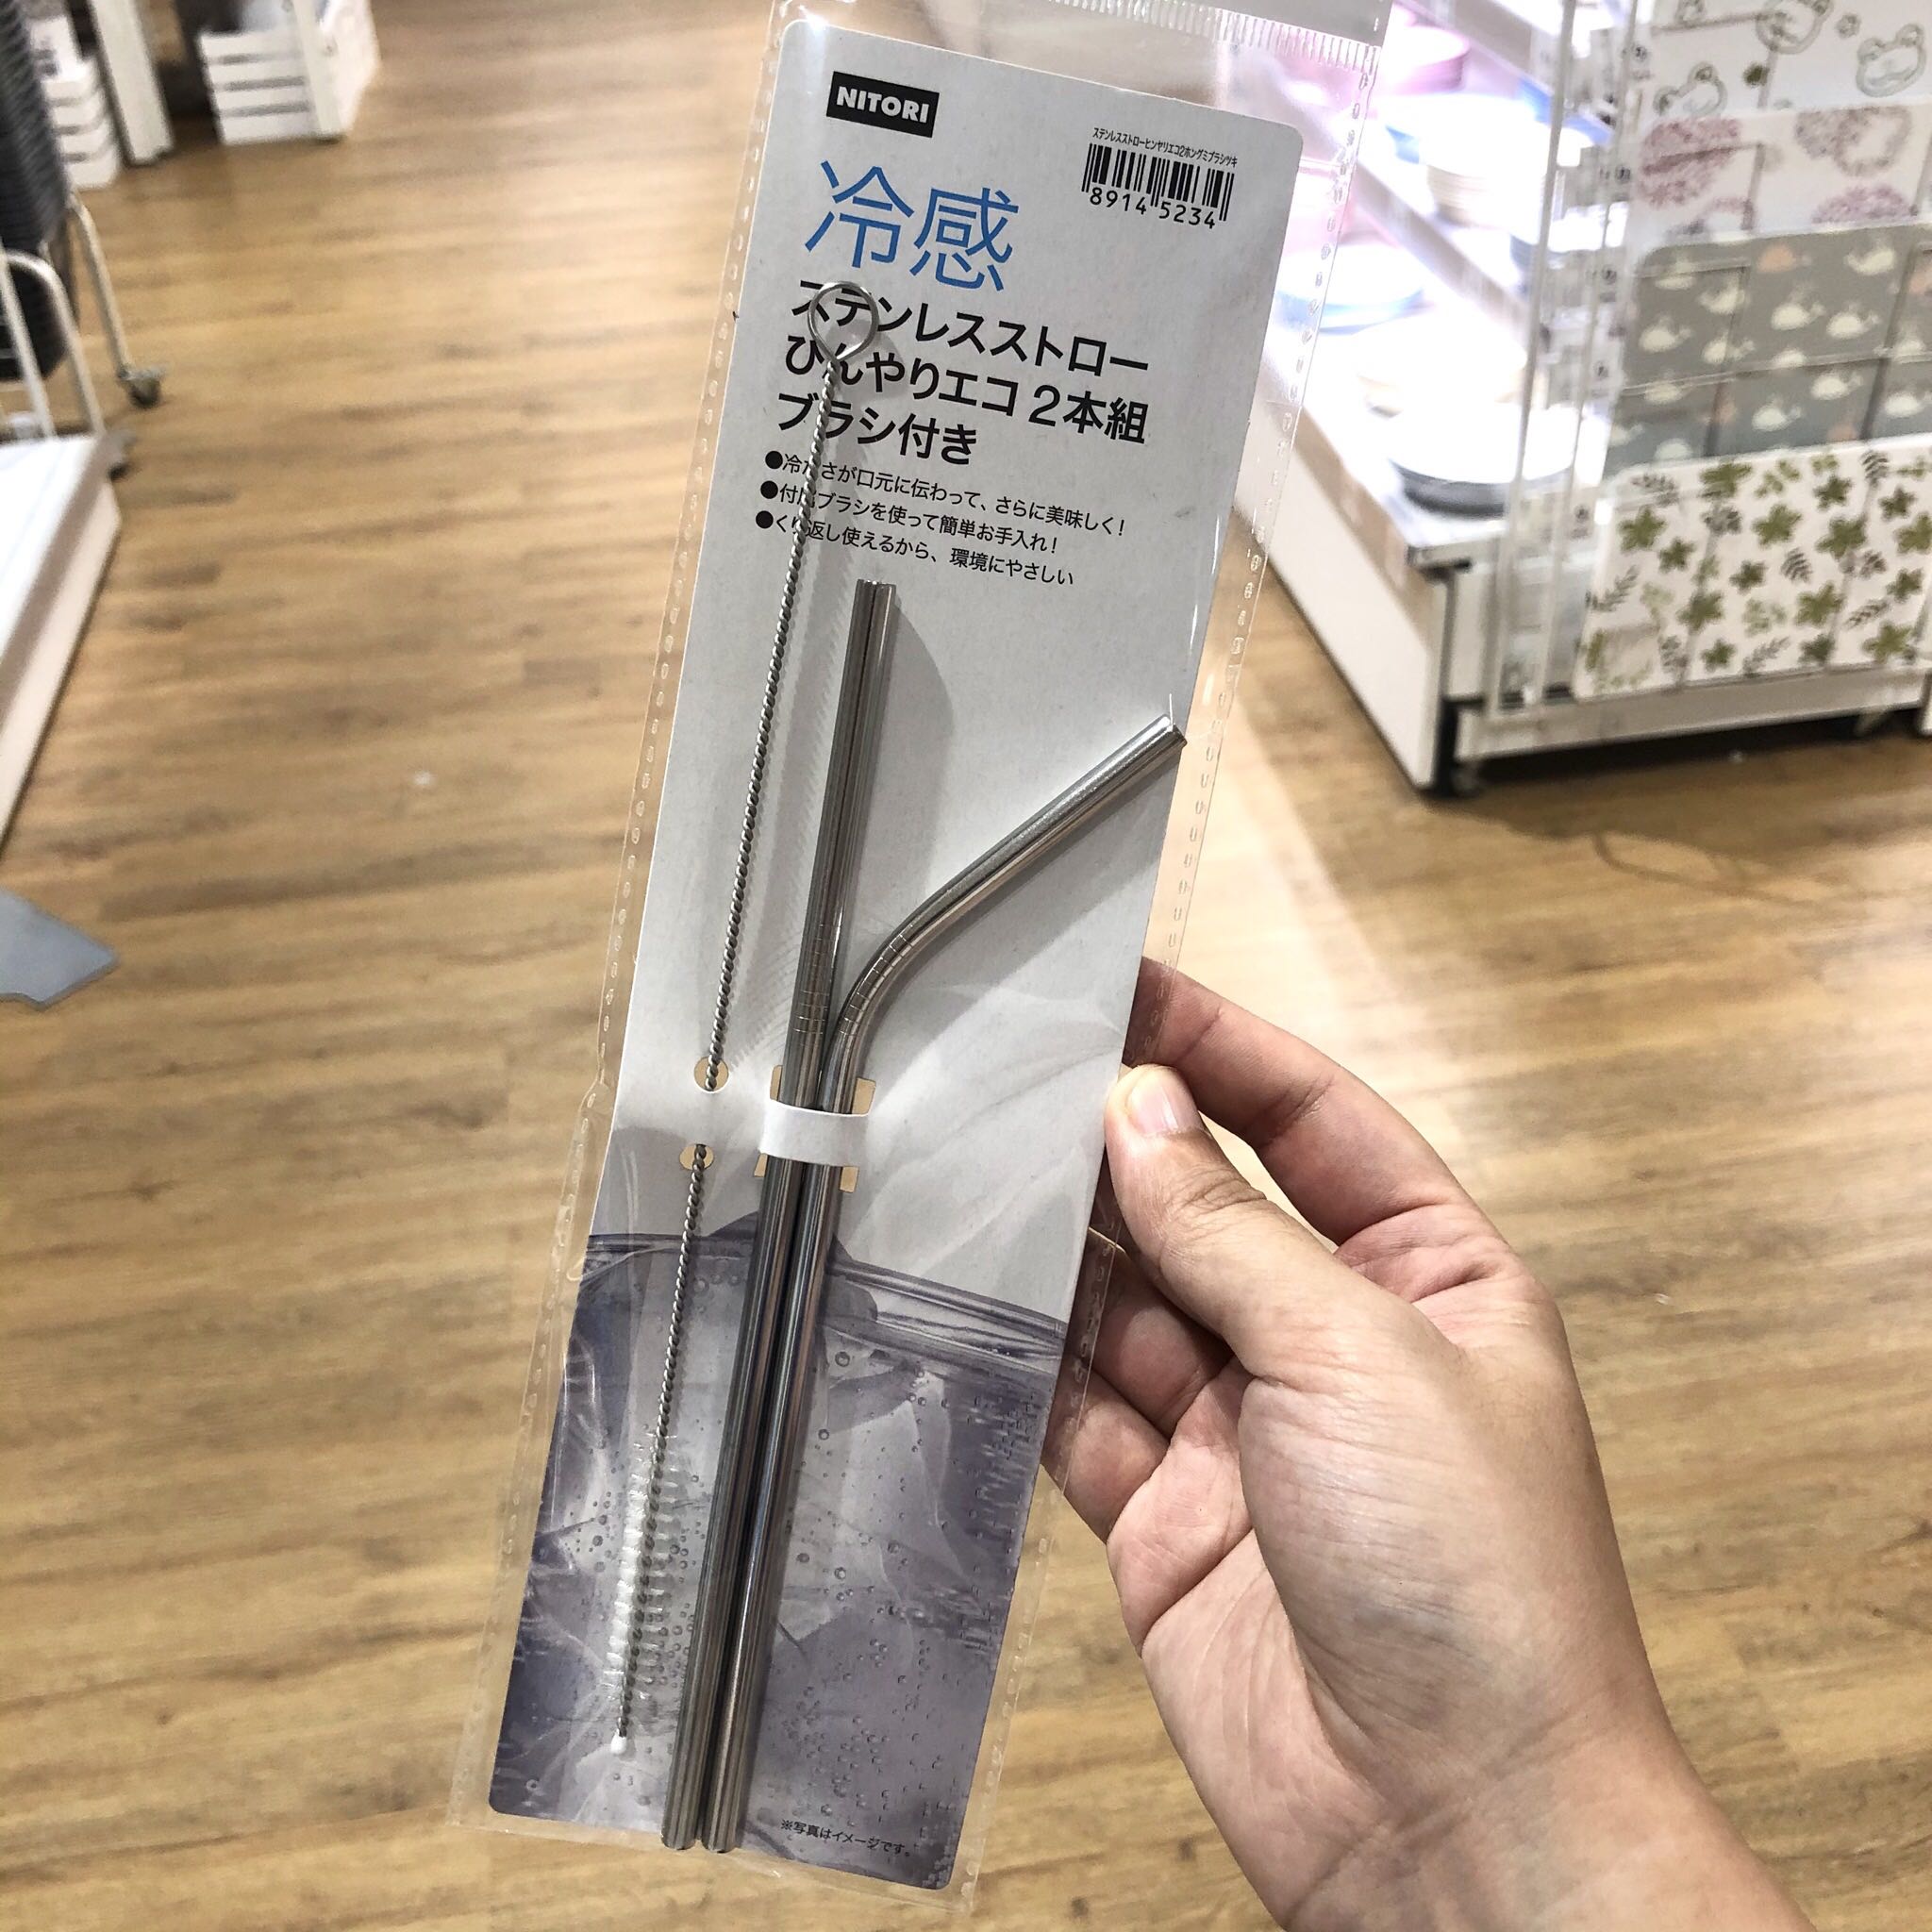 日本NITORI不锈钢吸管304环保可重复使用弯头带清洁刷尼达利包邮